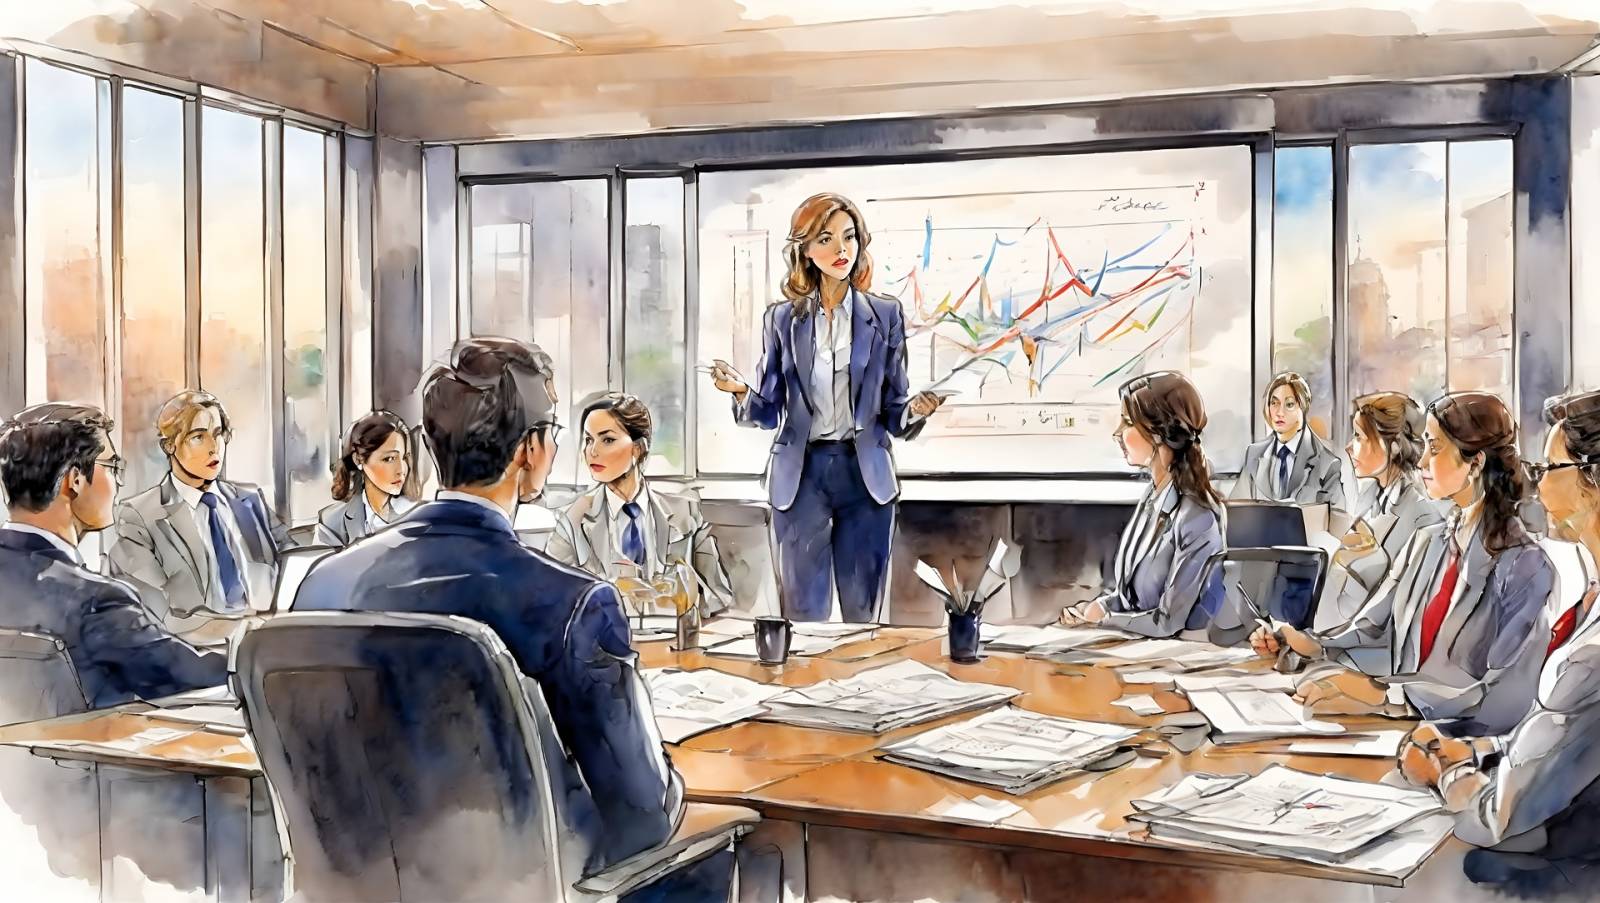 Piirretty kuva kokouksesta. Kuvassa nainen pitää esitelmää muulle tiimille, joka istuu pöydän ääressä kuuntelemassa.